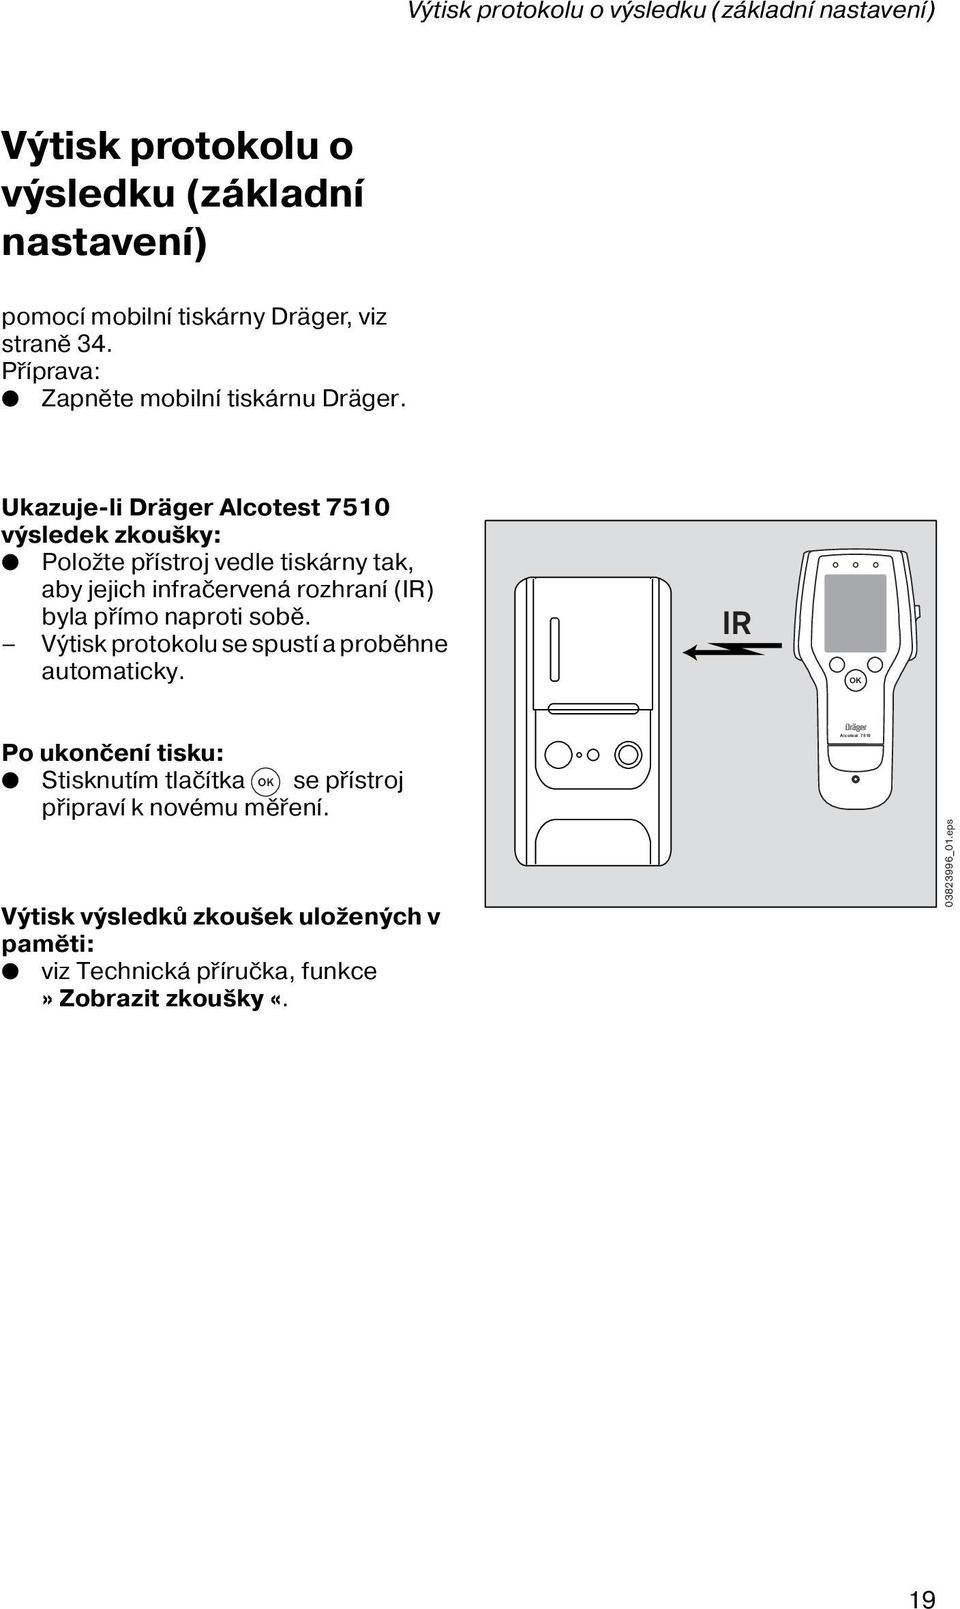 Ukazuje-li Dräger Alcotest 7510 výsledek zkoušky: Položte přístroj vedle tiskárny tak, aby jejich infračervená rozhraní (IR) byla přímo naproti sobě.